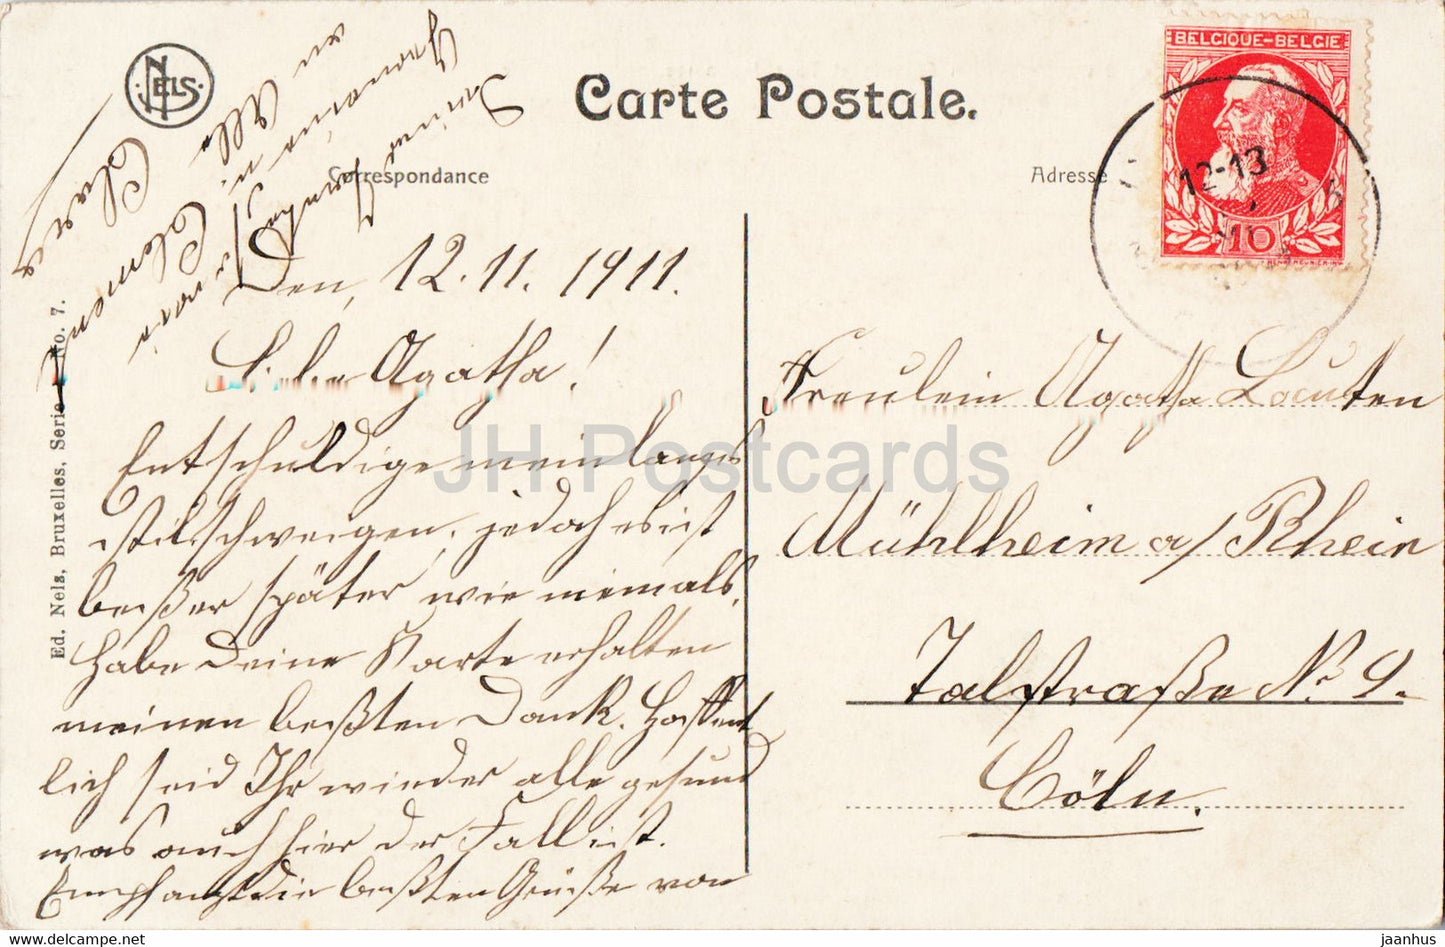 Bruxelles Laeken - Brüssel - Pavillon Chinois et Tour Japonaise - 7 - alte Postkarte - 1911 - Belgien - gebraucht